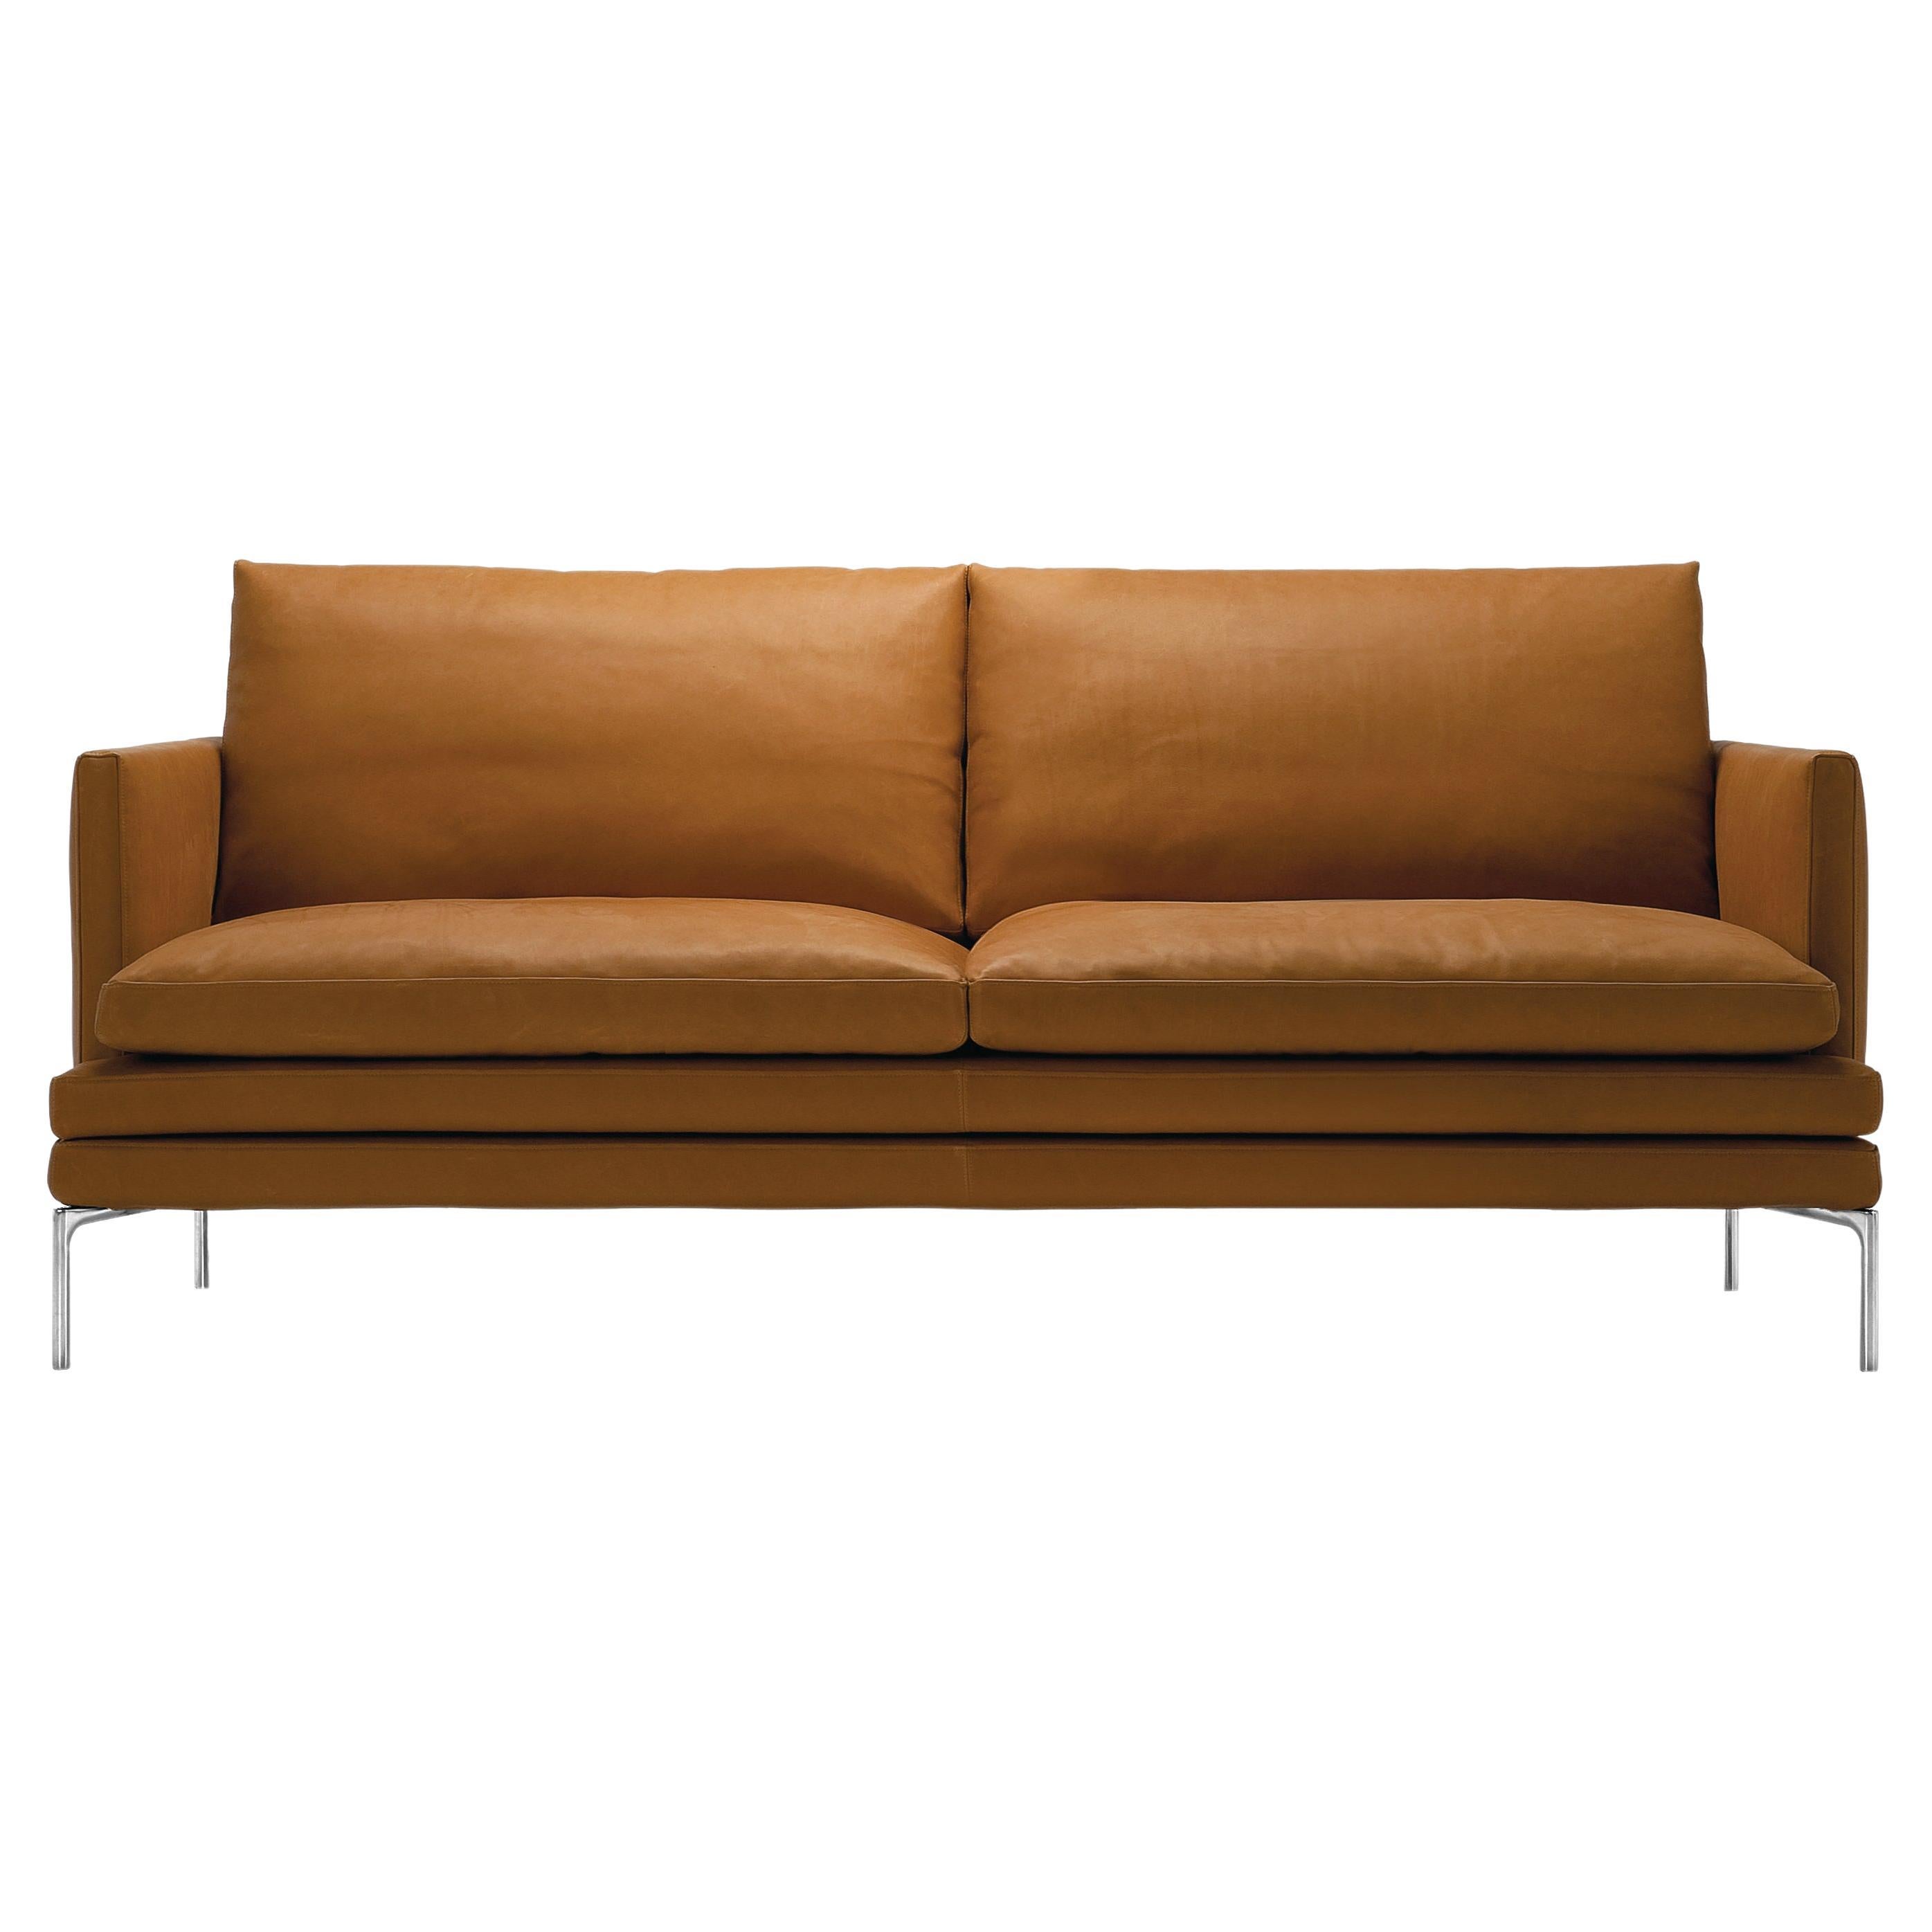 Zanotta William Monobloc Small Sofa in Brown Leather by Damian Williamson